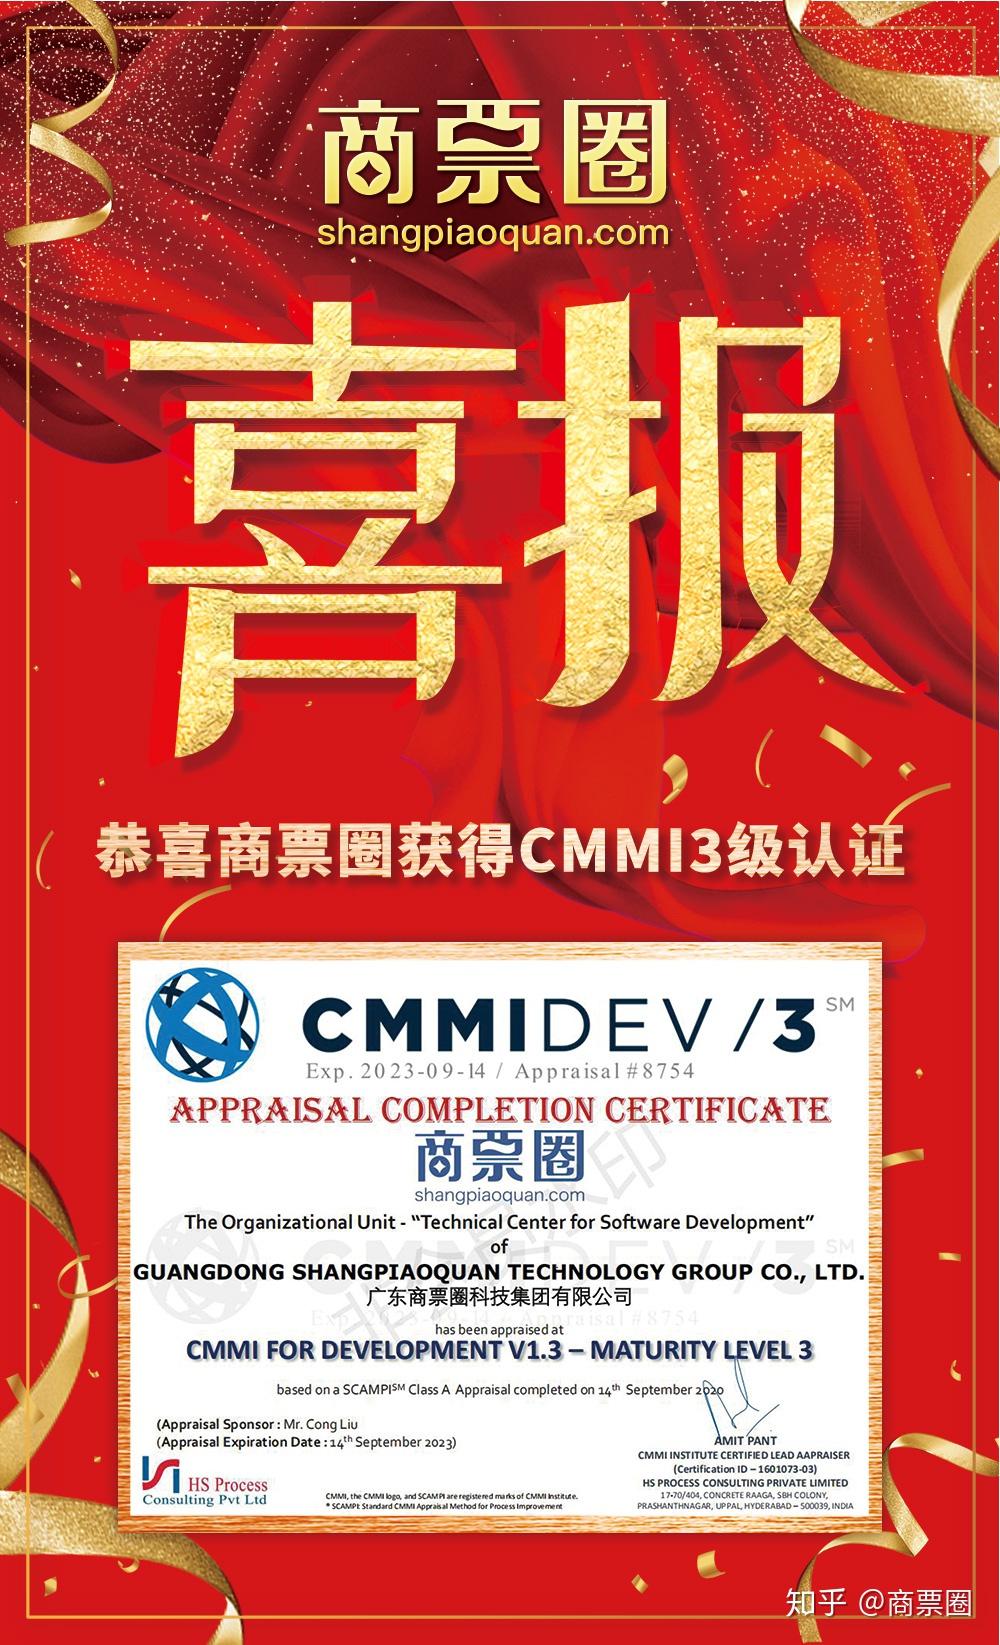 喜讯!商票圈通过CMMI3级认证,研发实力获